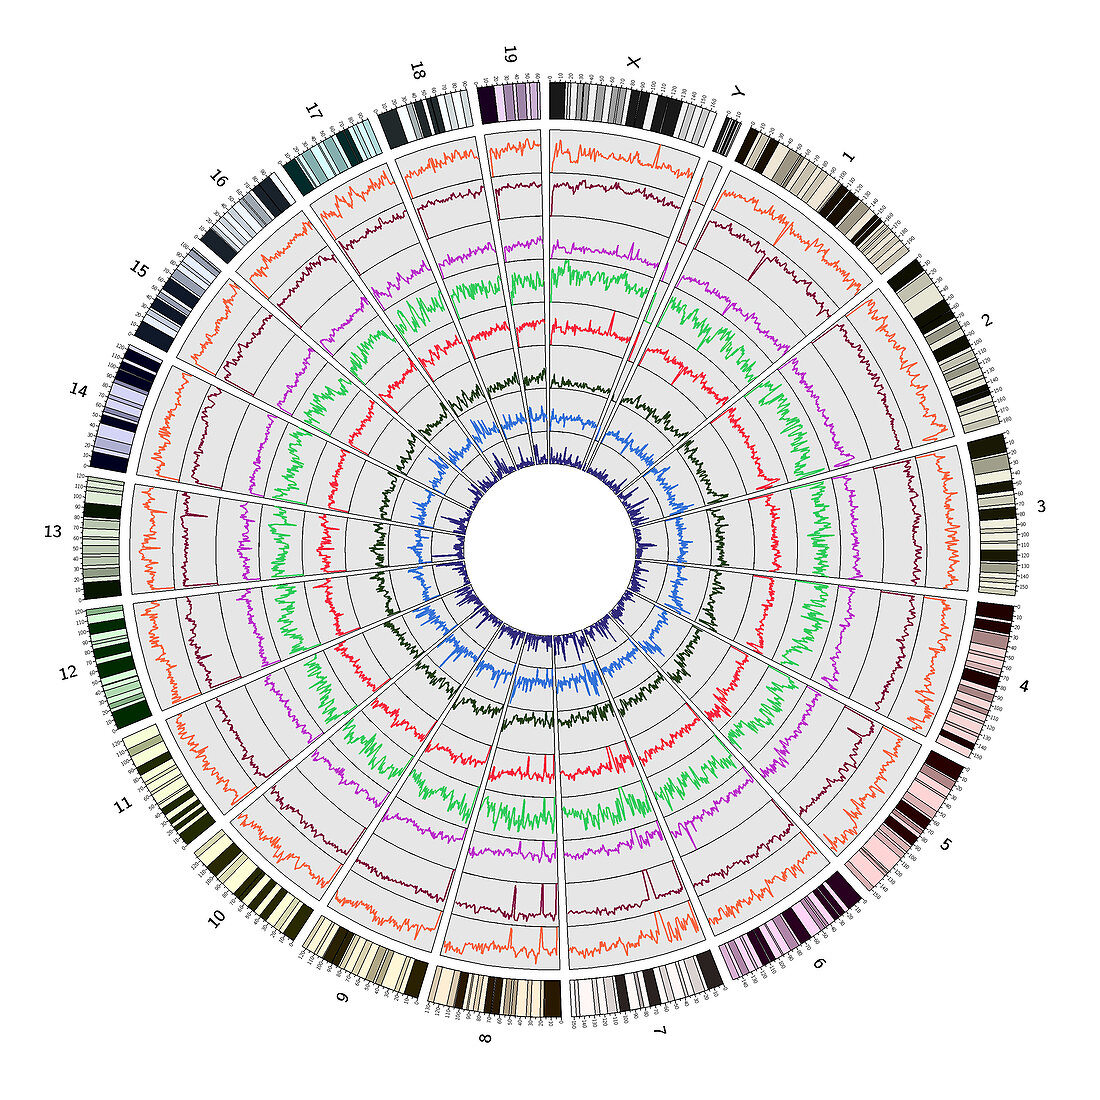 Circos, Circular Genome Map, Mouse